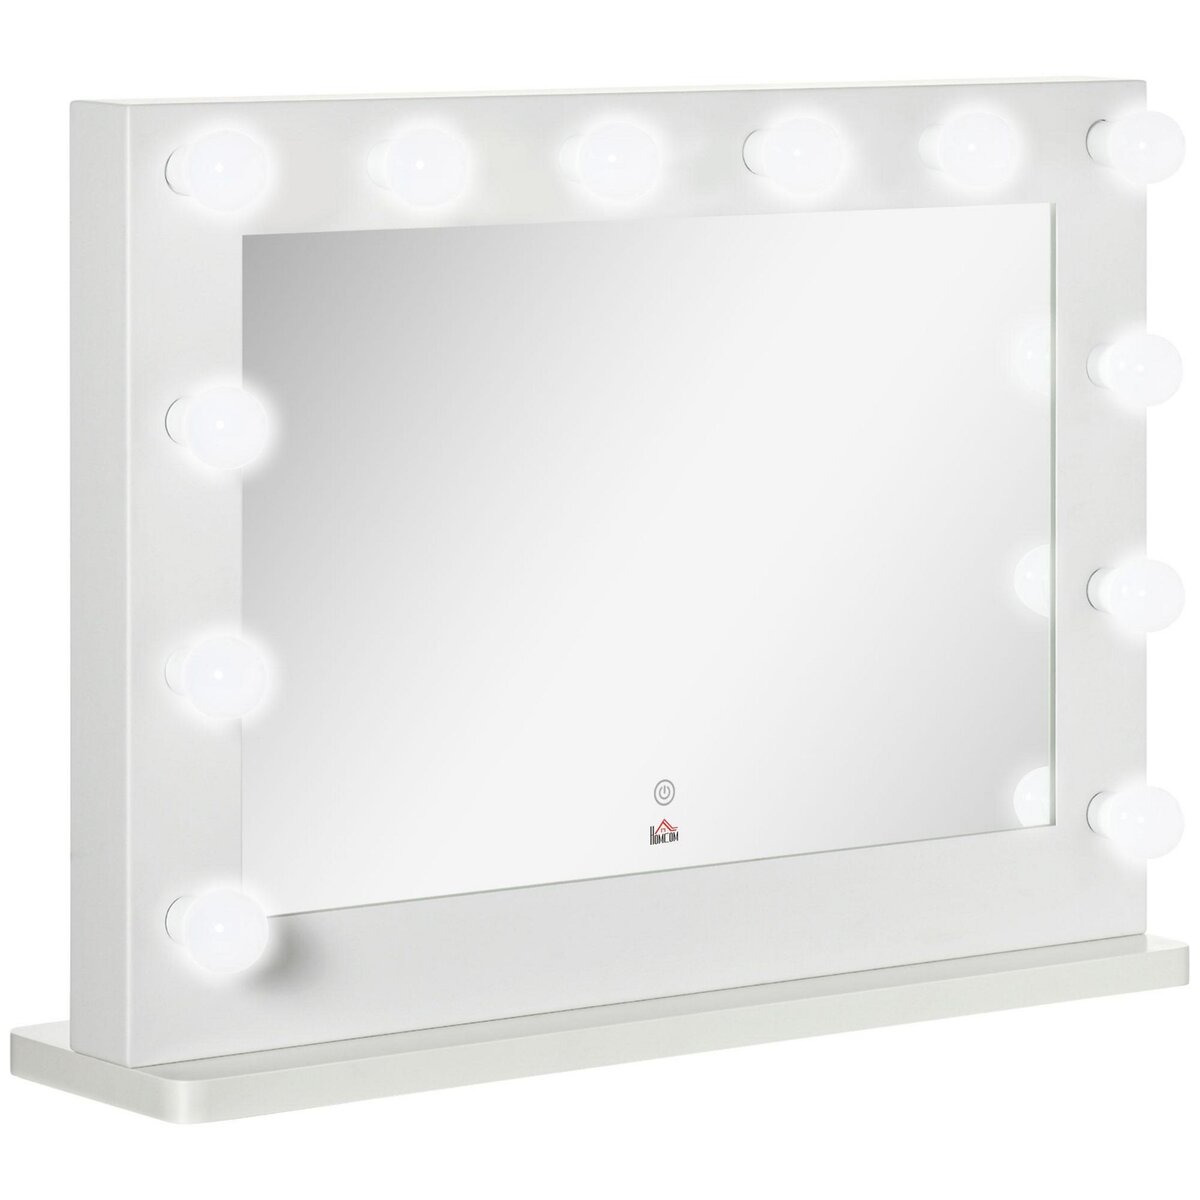 Miroir maquillage Hollywood lumineux LED tactile - 3 modes éclairage,  inclinable, adaptateur - métal noir verre